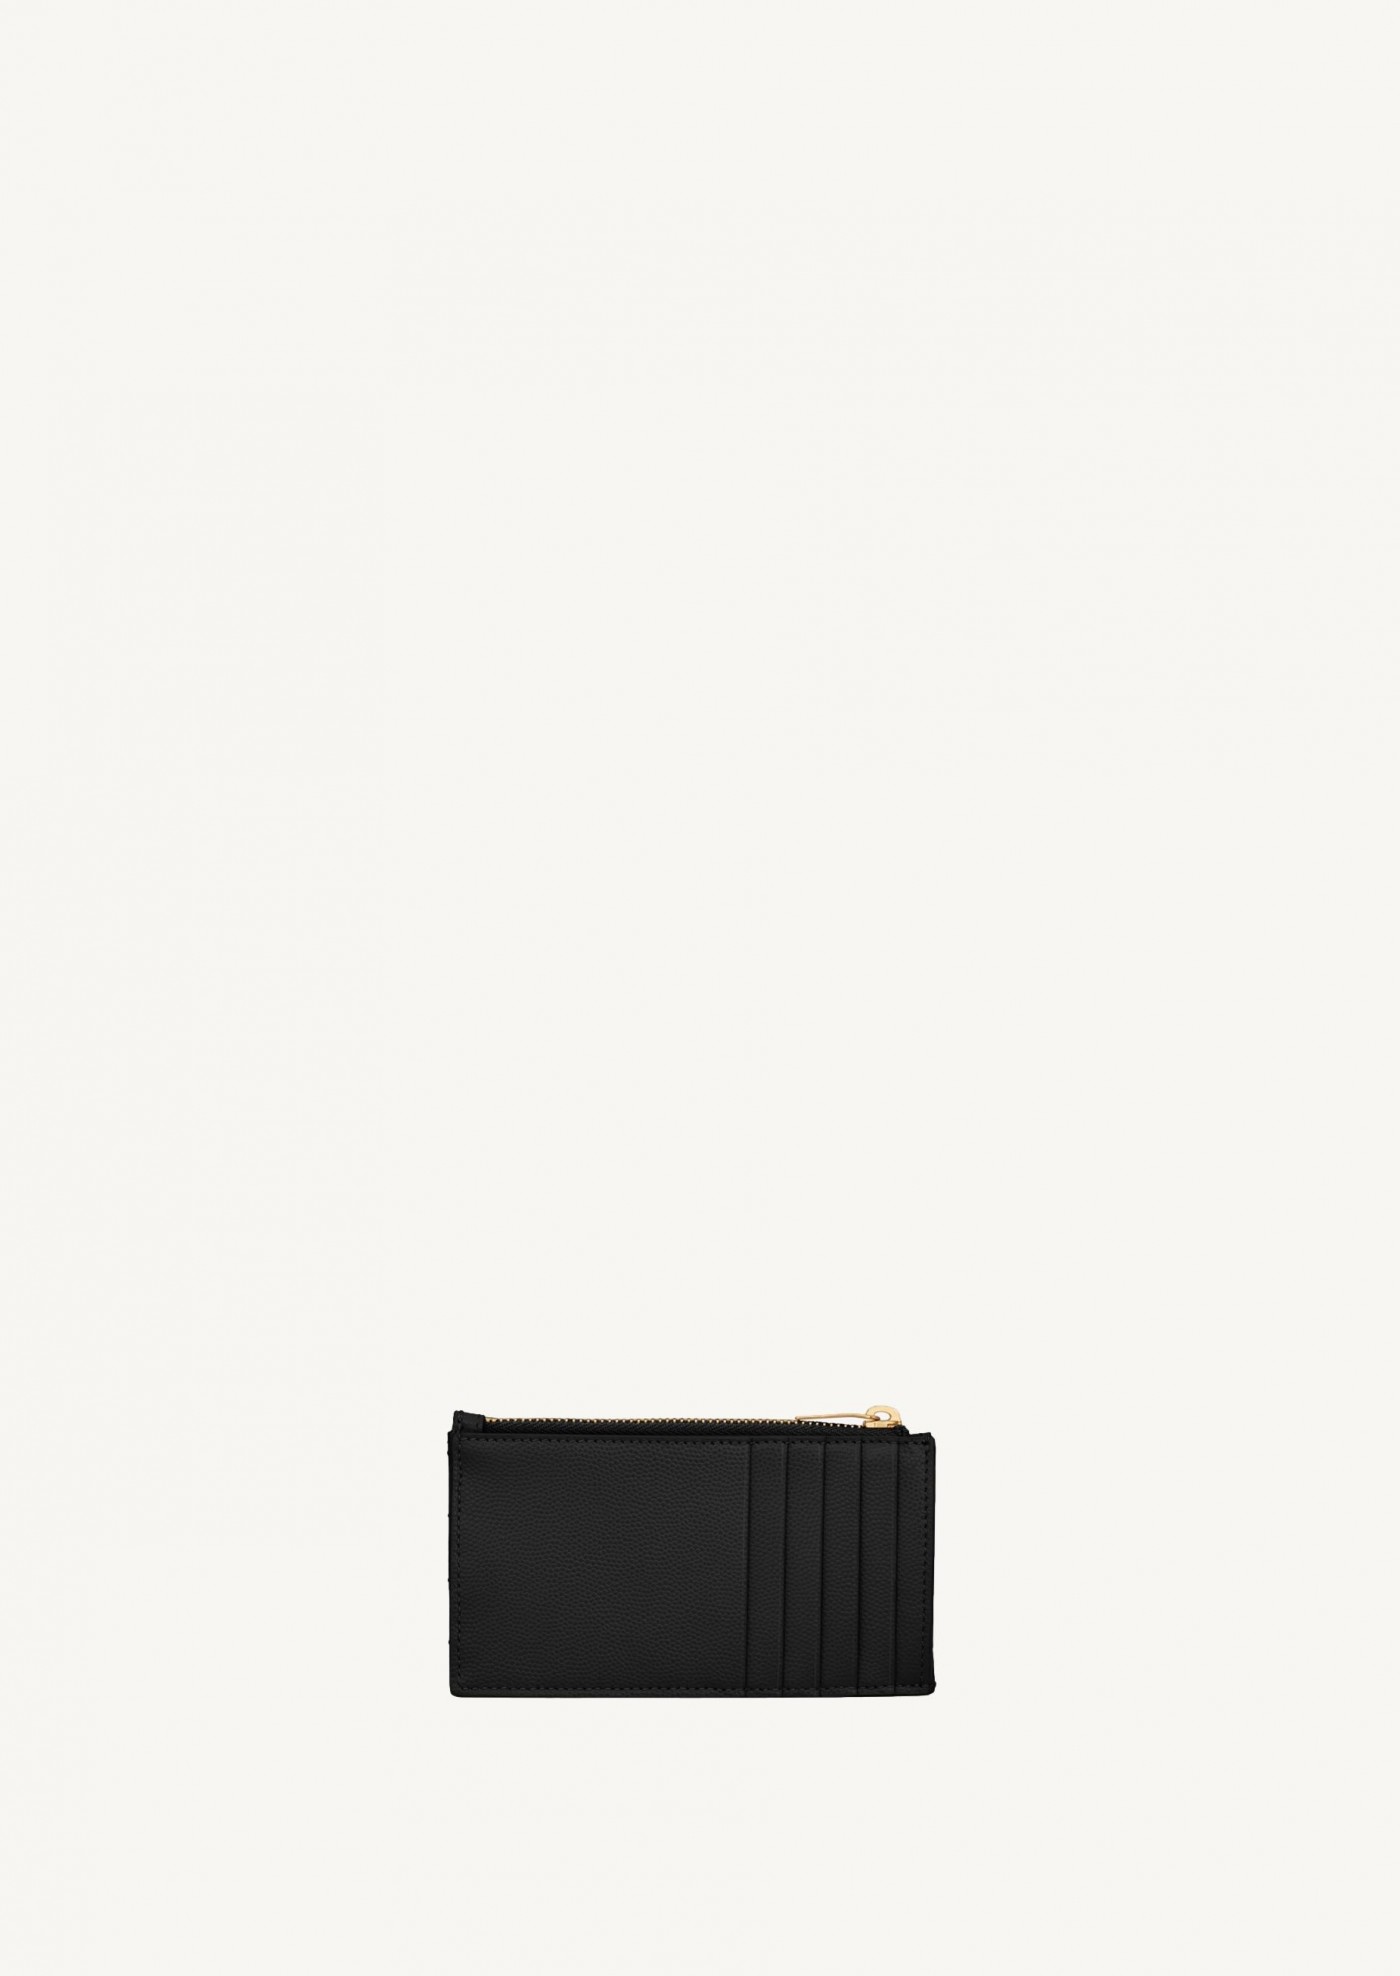 Cassandre zipped card holder in black powder grain embossed leather